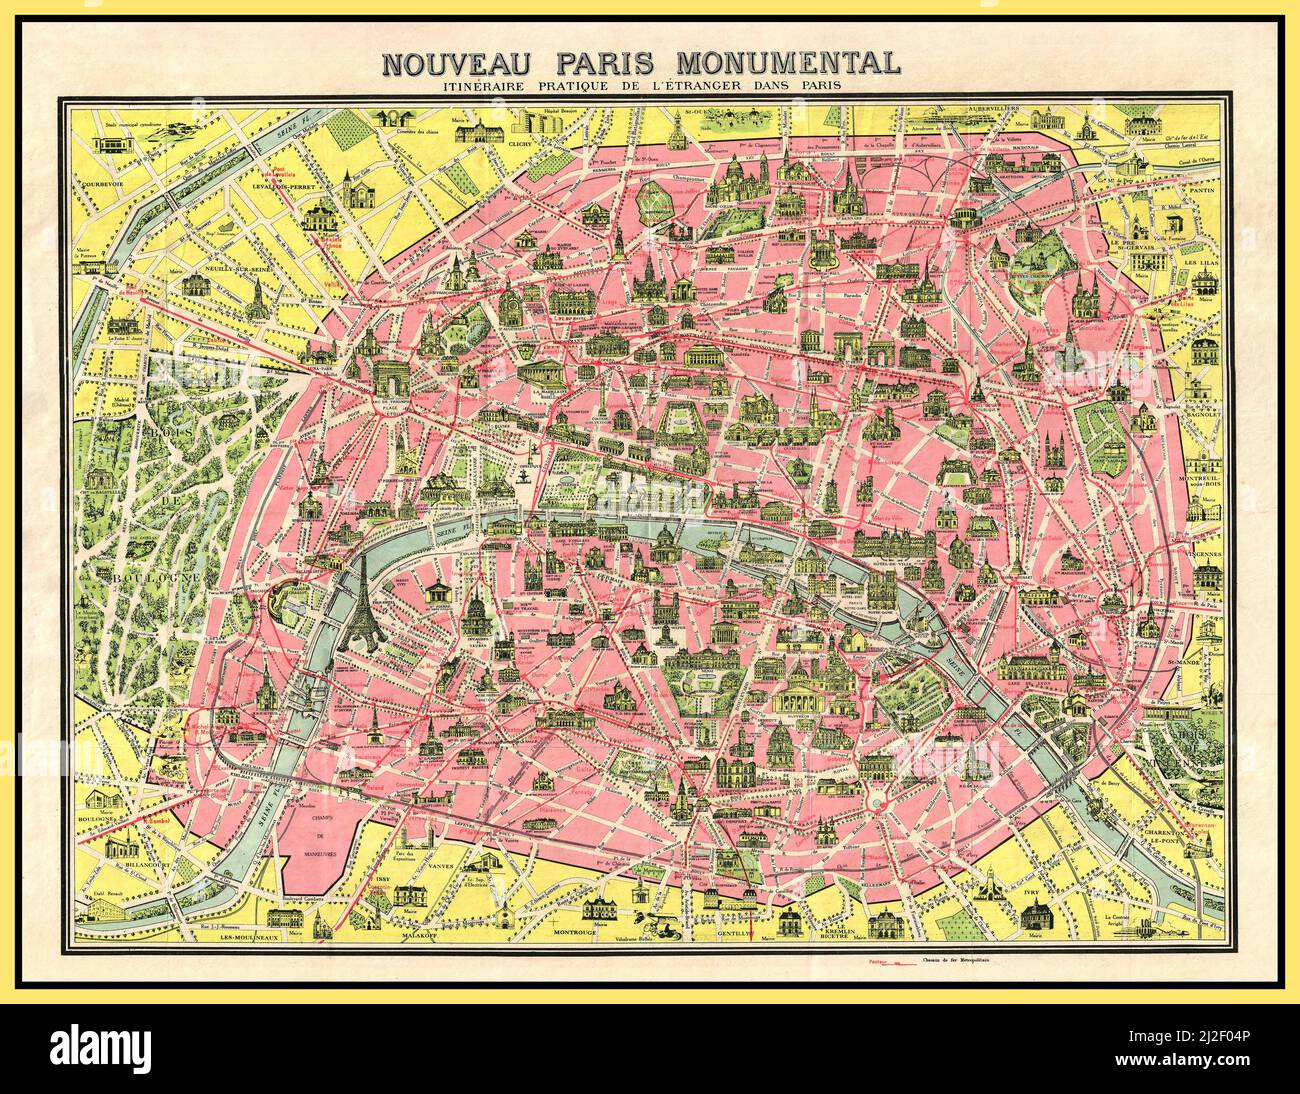 Mappa Dei Monumenti Di Parigi Immagini e Fotos Stock - Alamy